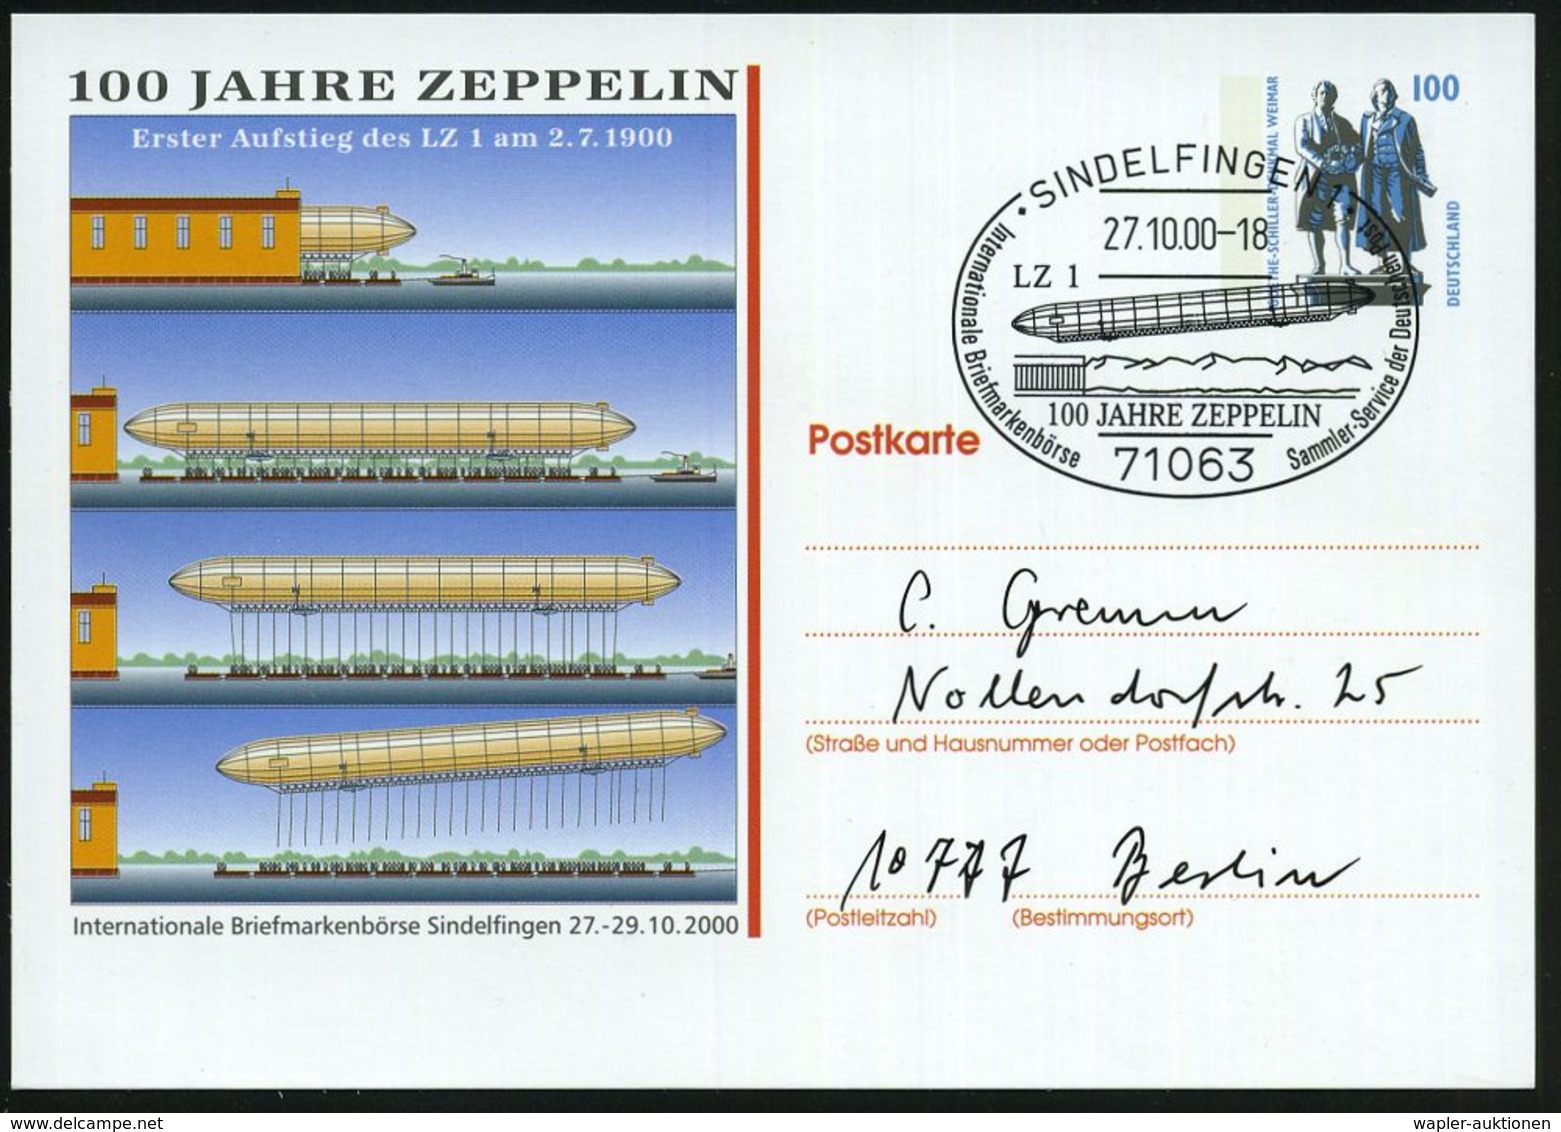 ZEPPELIN-MEMORABILA / ERINNERUNGSBELEGE : 71063 SINDELFINGEN 1/ 100 JAHRE ZEPPELIN.. 2000 (27.10.) SSt = Zeppelin LZ 1 A - Zeppelins